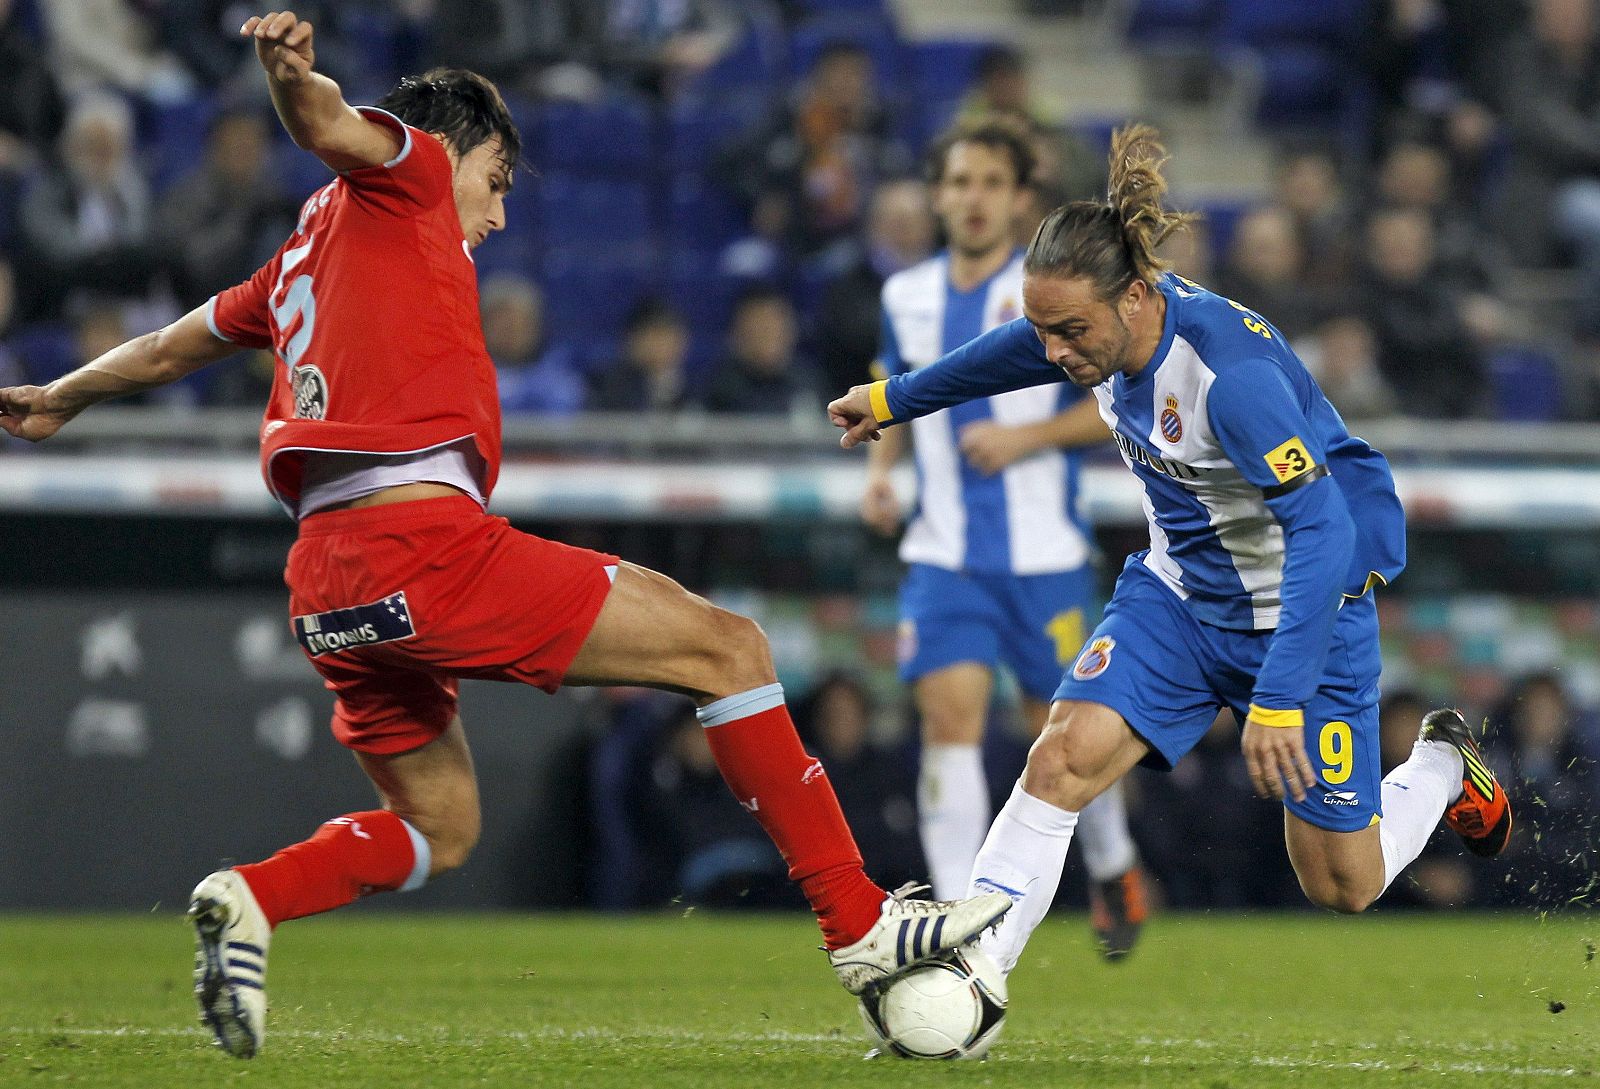 El delantero del RCD Espanyol Sergio García pelea un balón con el defensa del Celta de Vigo Jonathan Vila.